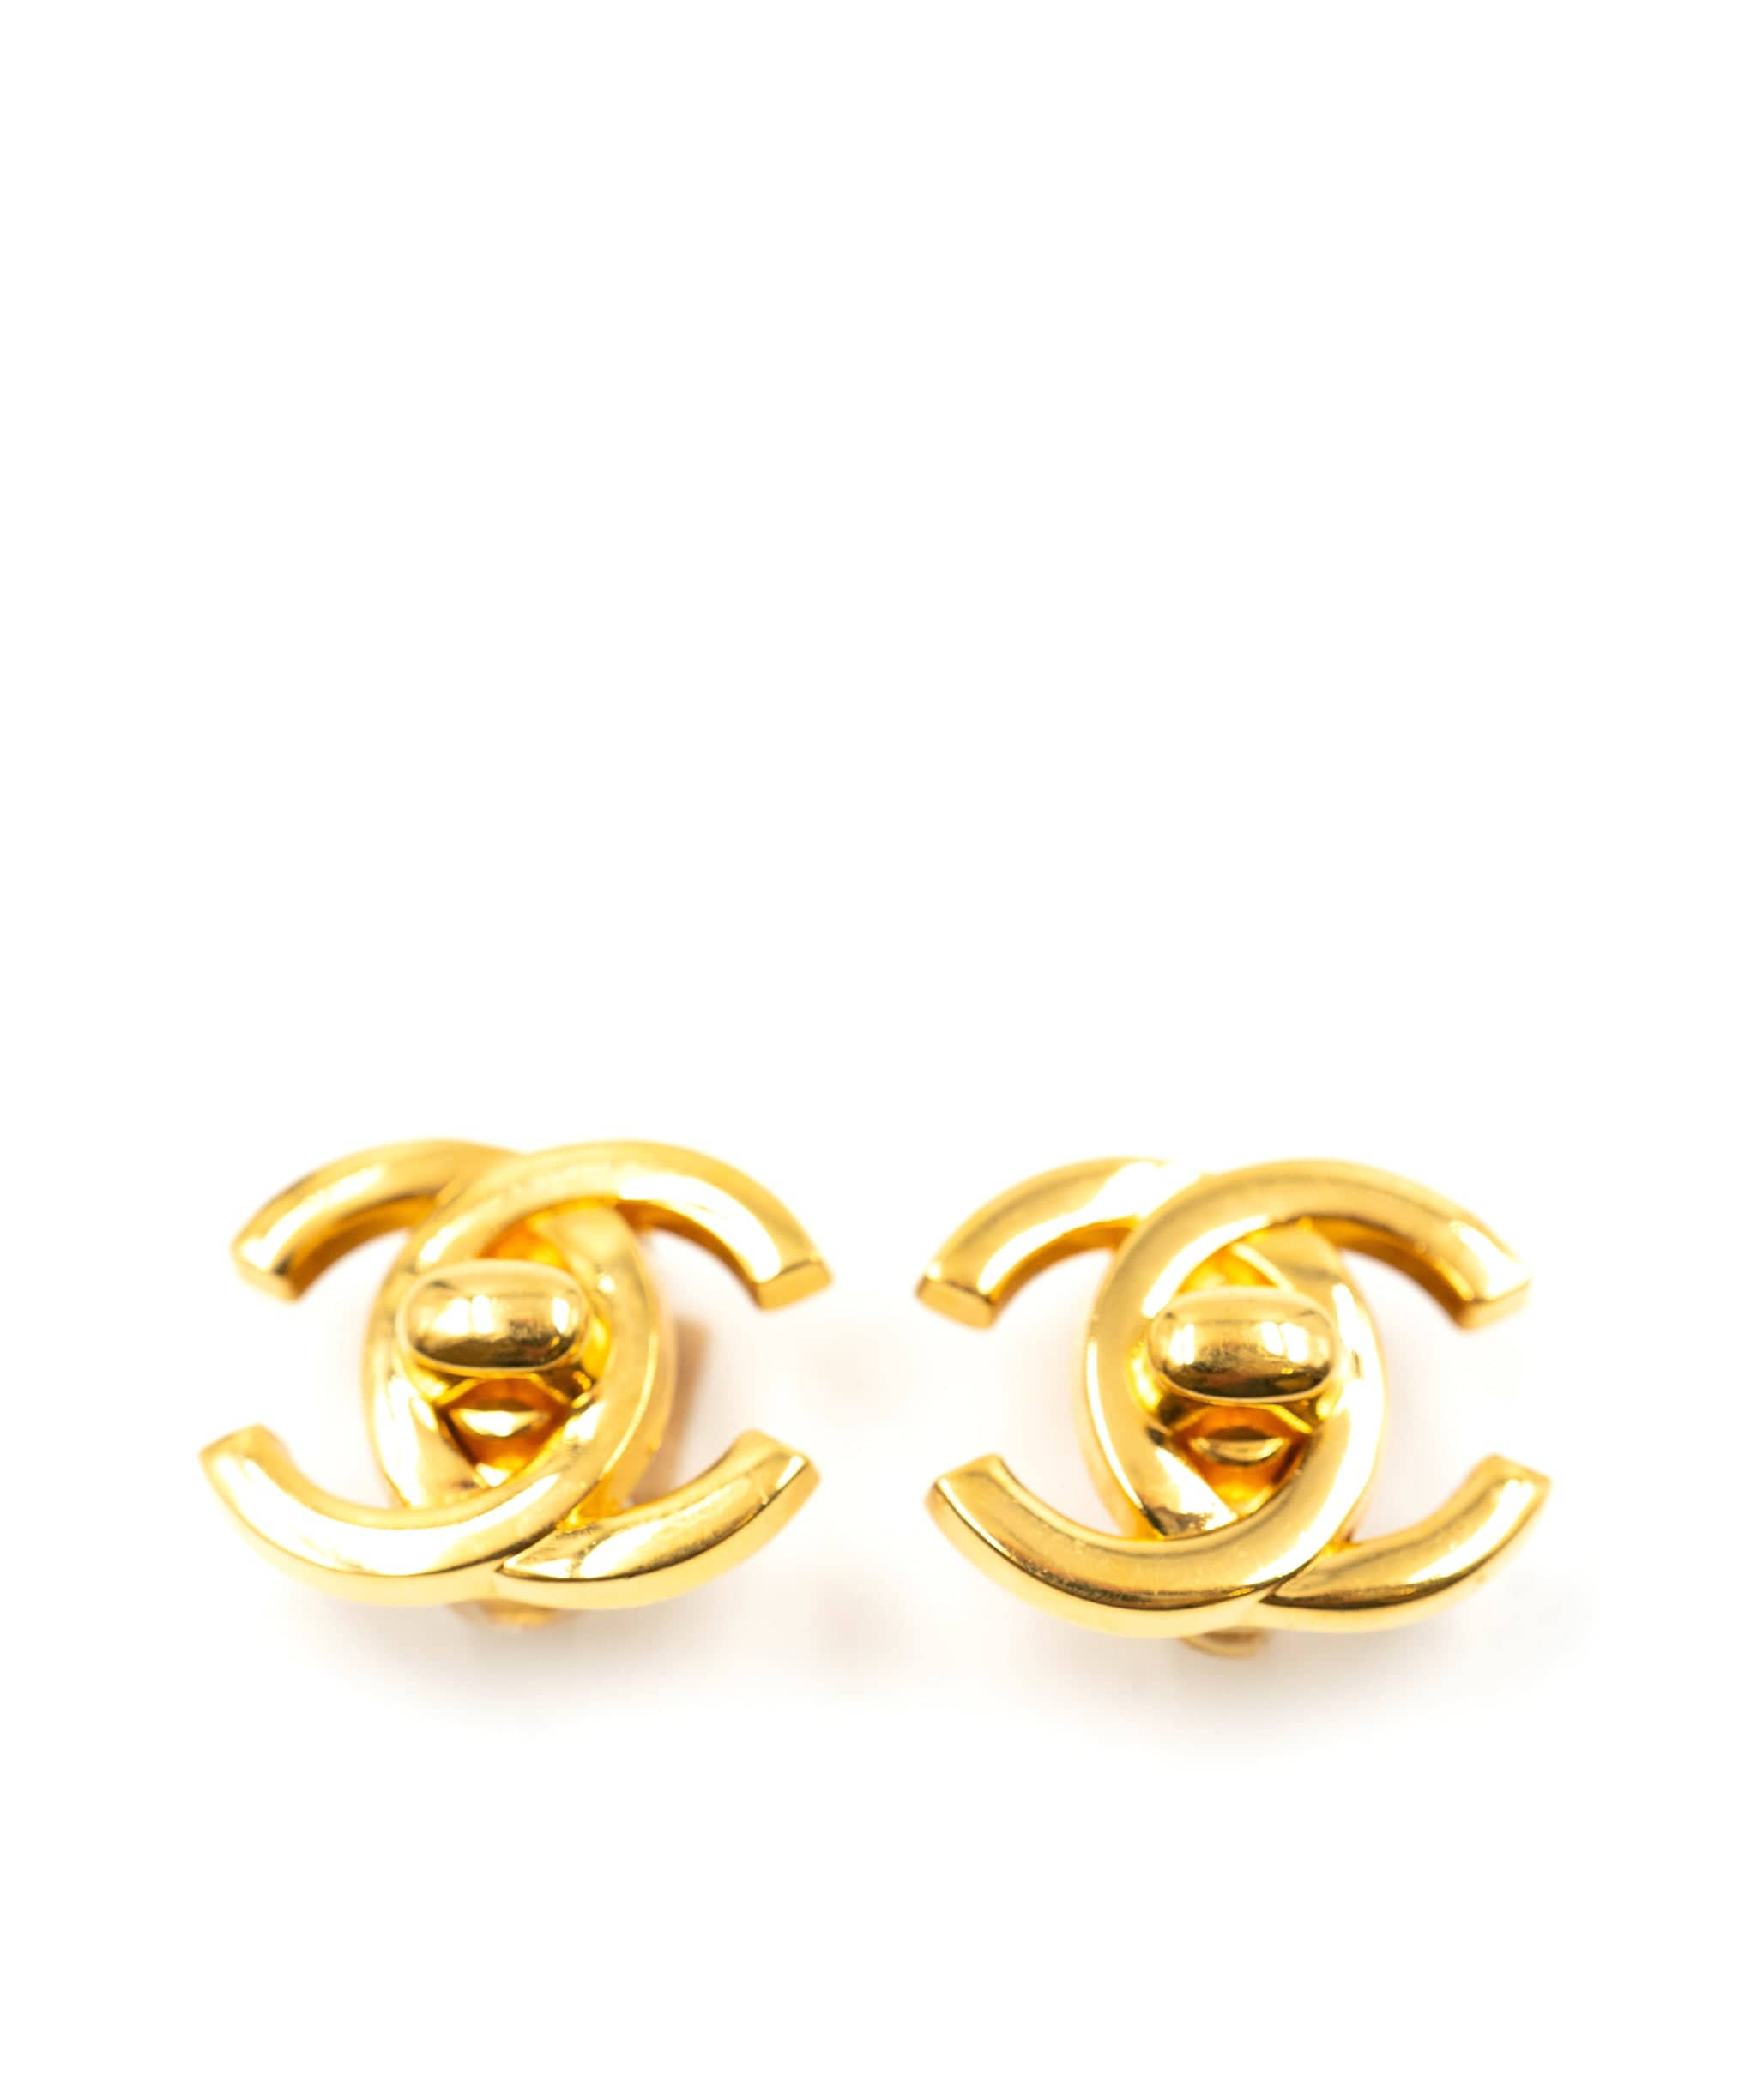 Chanel Chanel turnlock CC earrings